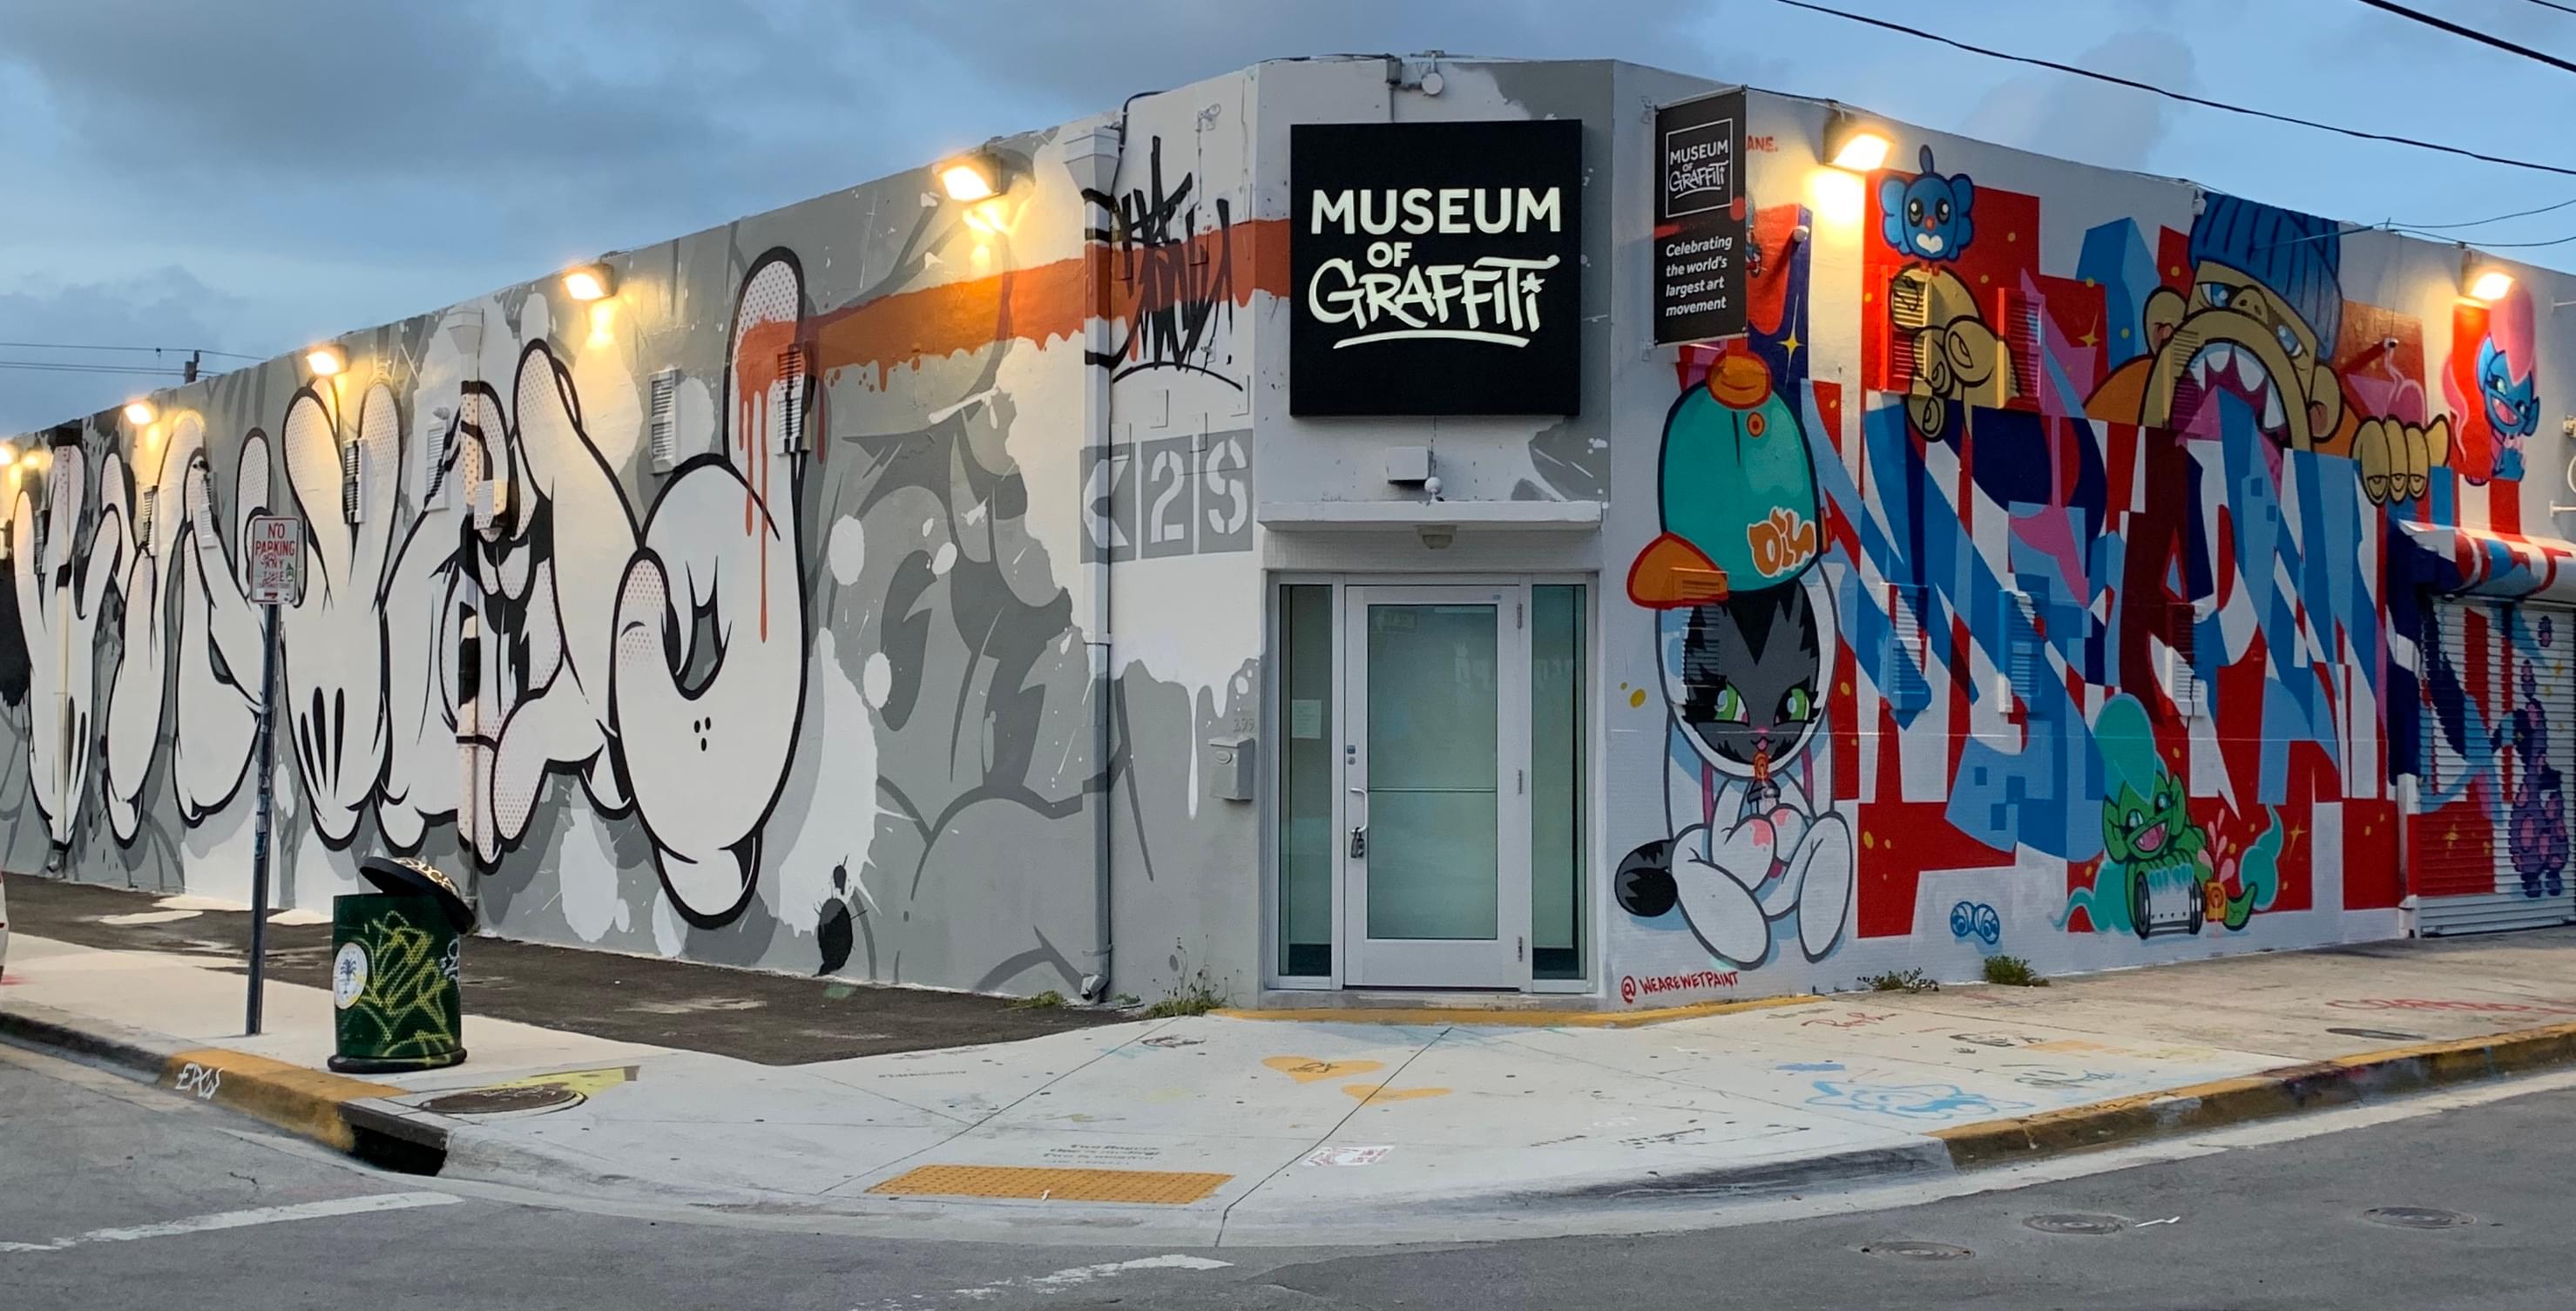 Explore the colorful Museum of Graffiti in Miami